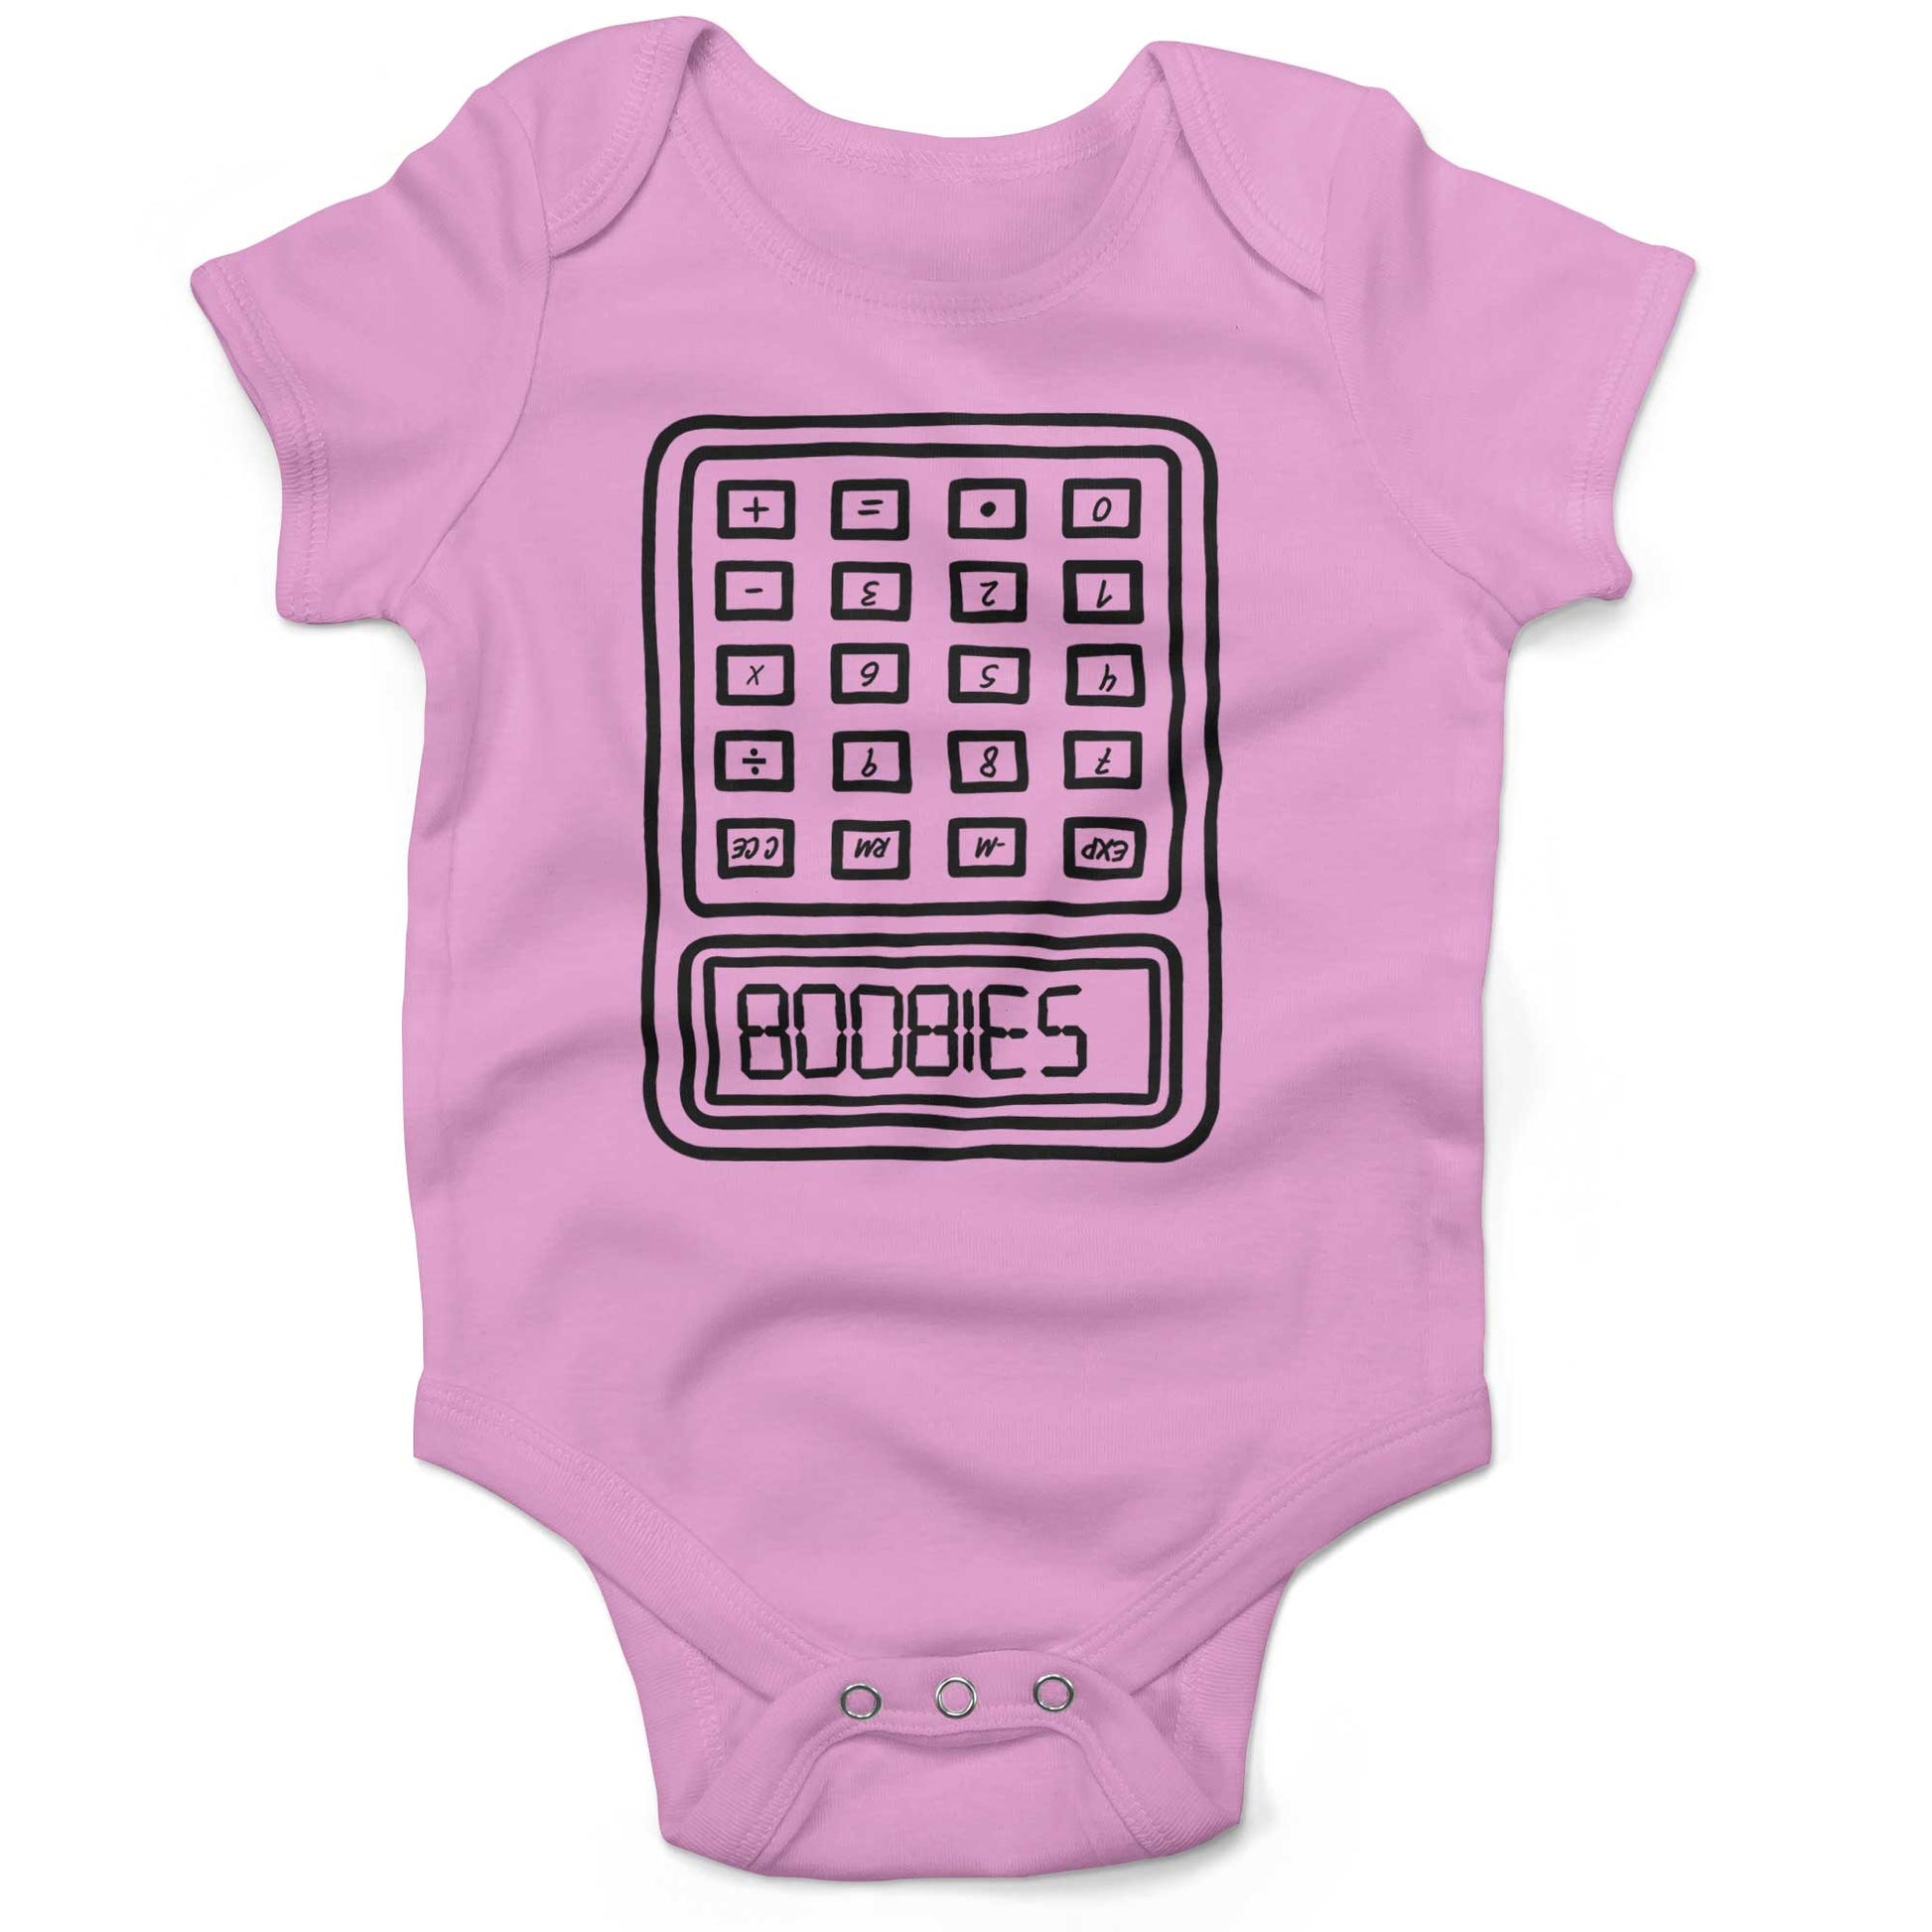 BOOBIES Infant Bodysuit or Raglan Baby Tee-Organic Pink-3-6 months